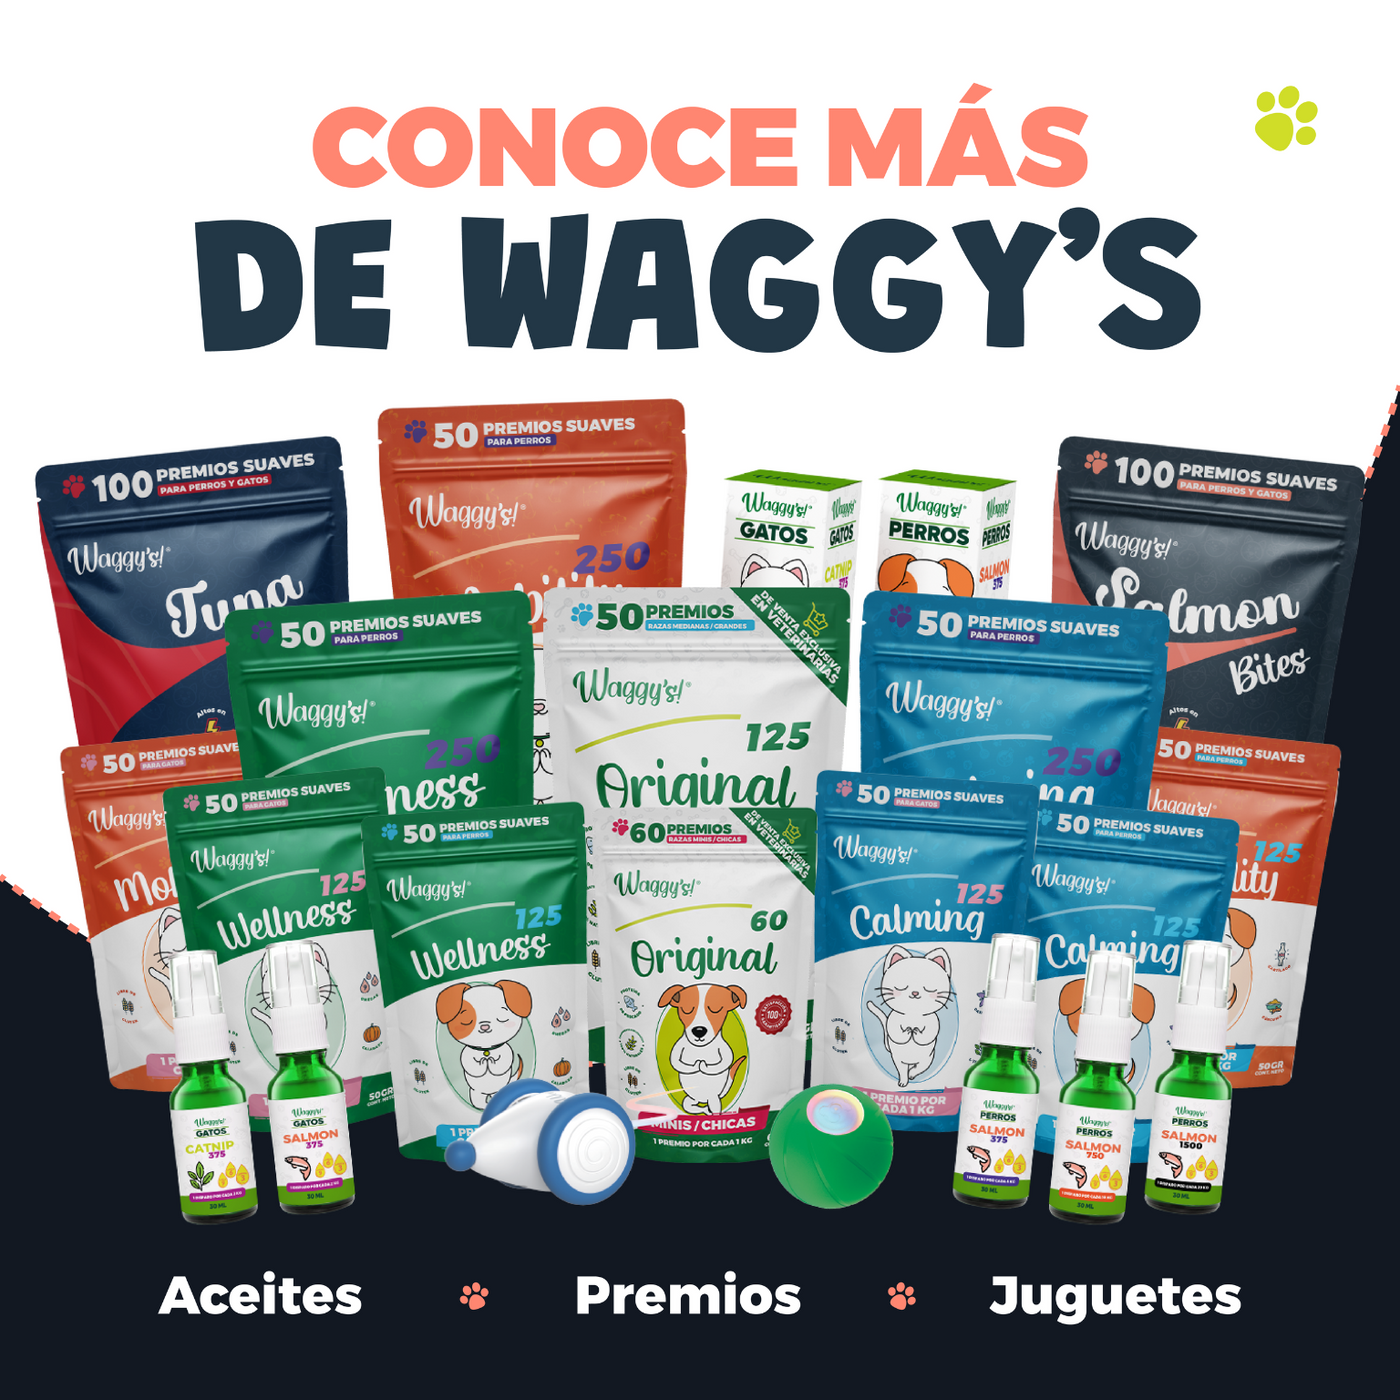 Waggy's® Bites (Salmón / Atún)